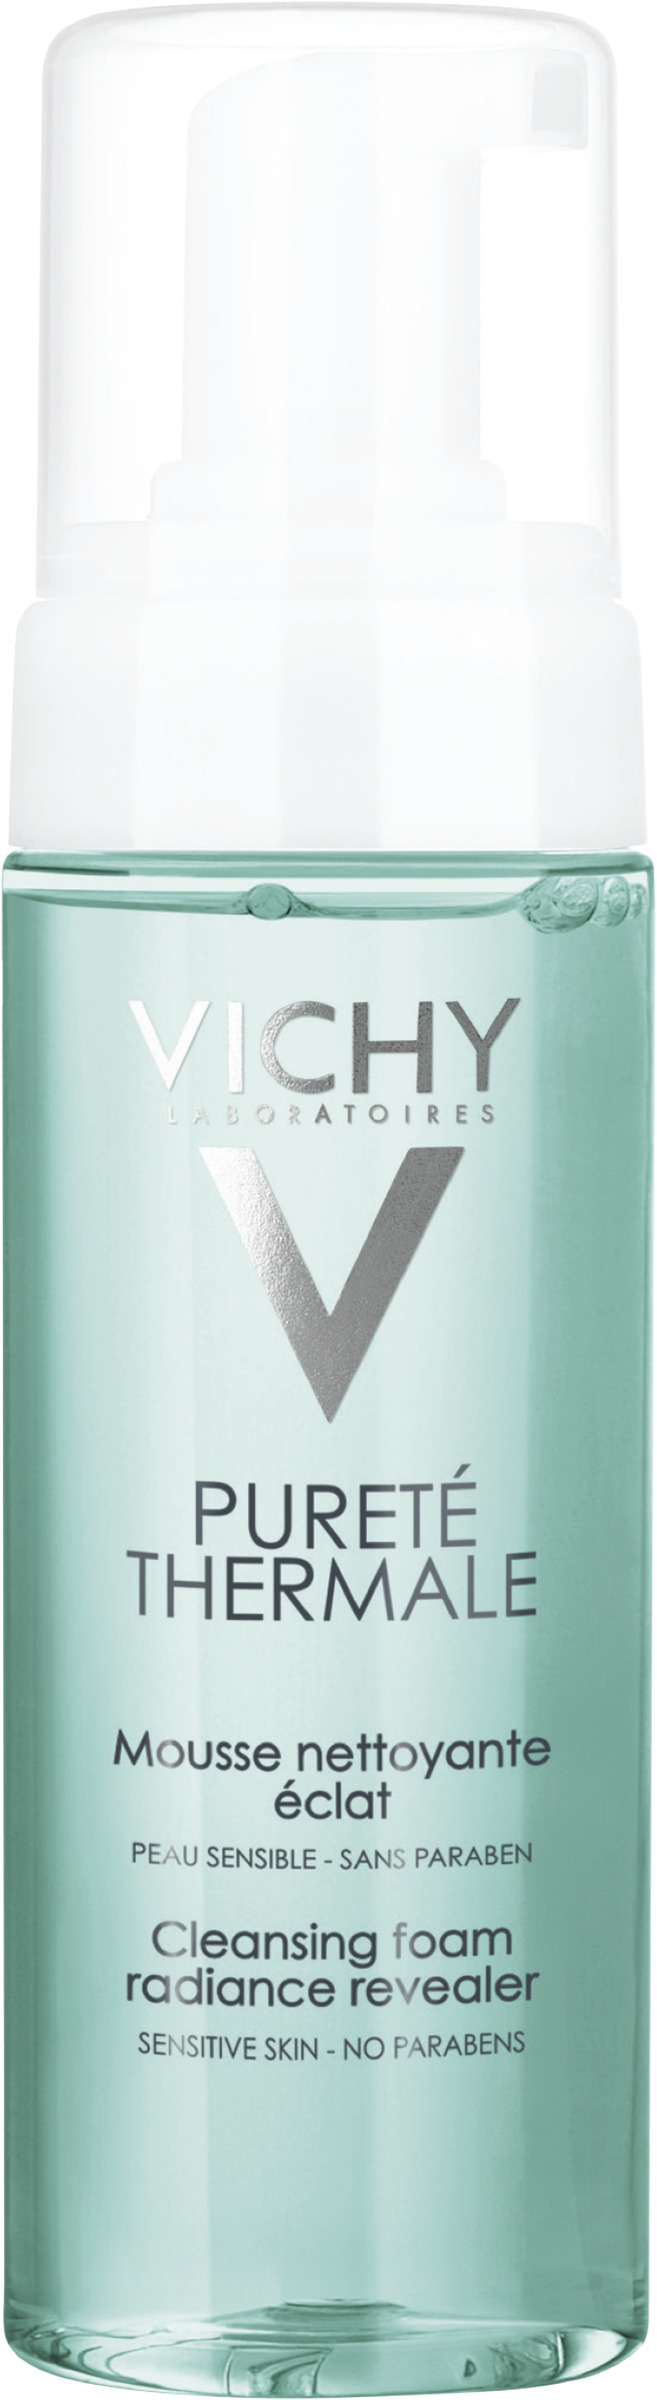 Vichy Pureté Thermale rengöringsmousse 150 ml